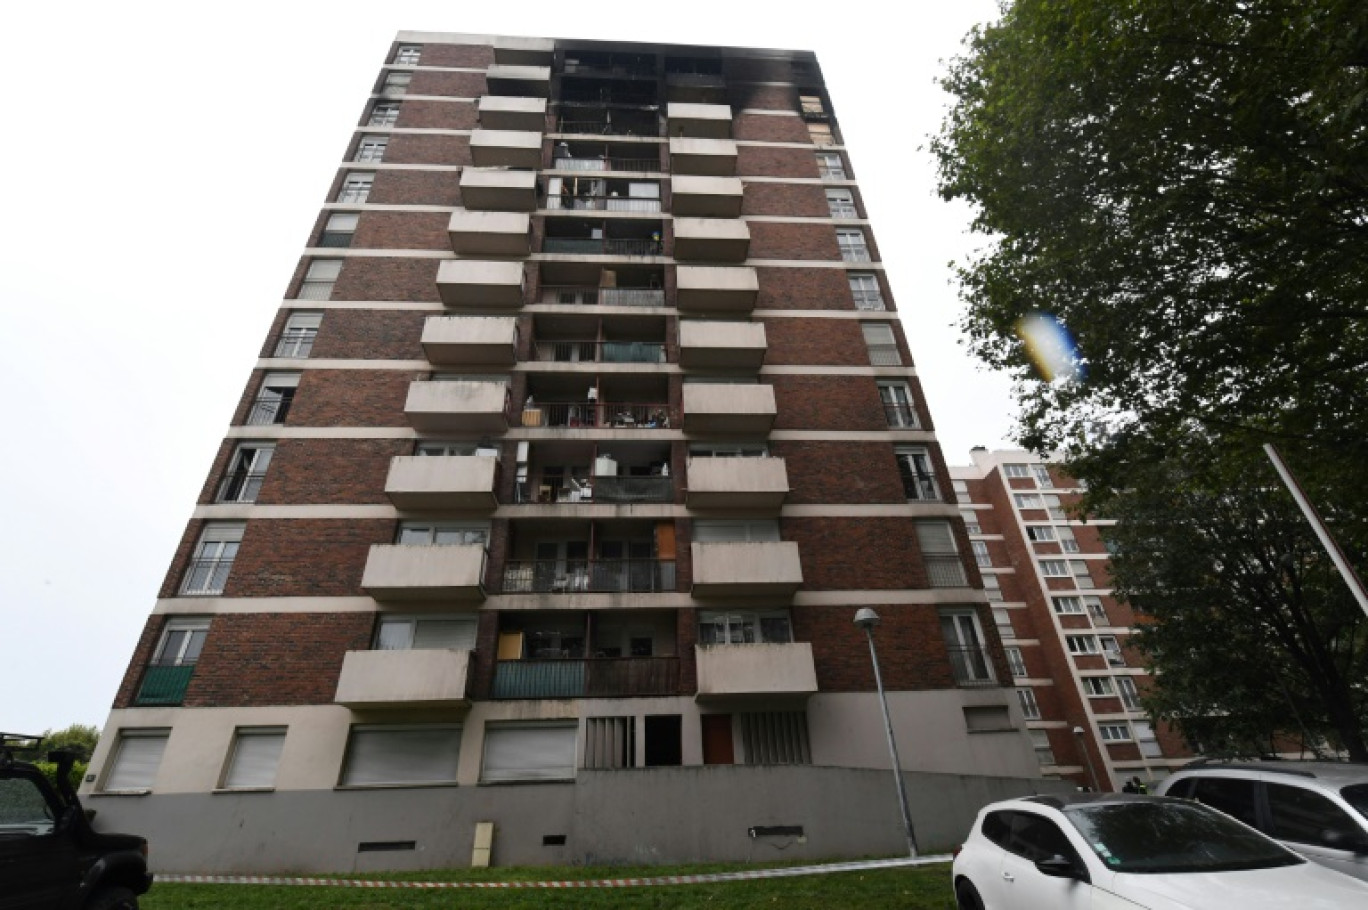 Vue de l'immeuble, le 31 août 2023, où un incendie s'est déclaré le 19 août 2023, à L'Ile-Saint-Denis, en Seine-Saint-Denis © MEHDI FEDOUACH